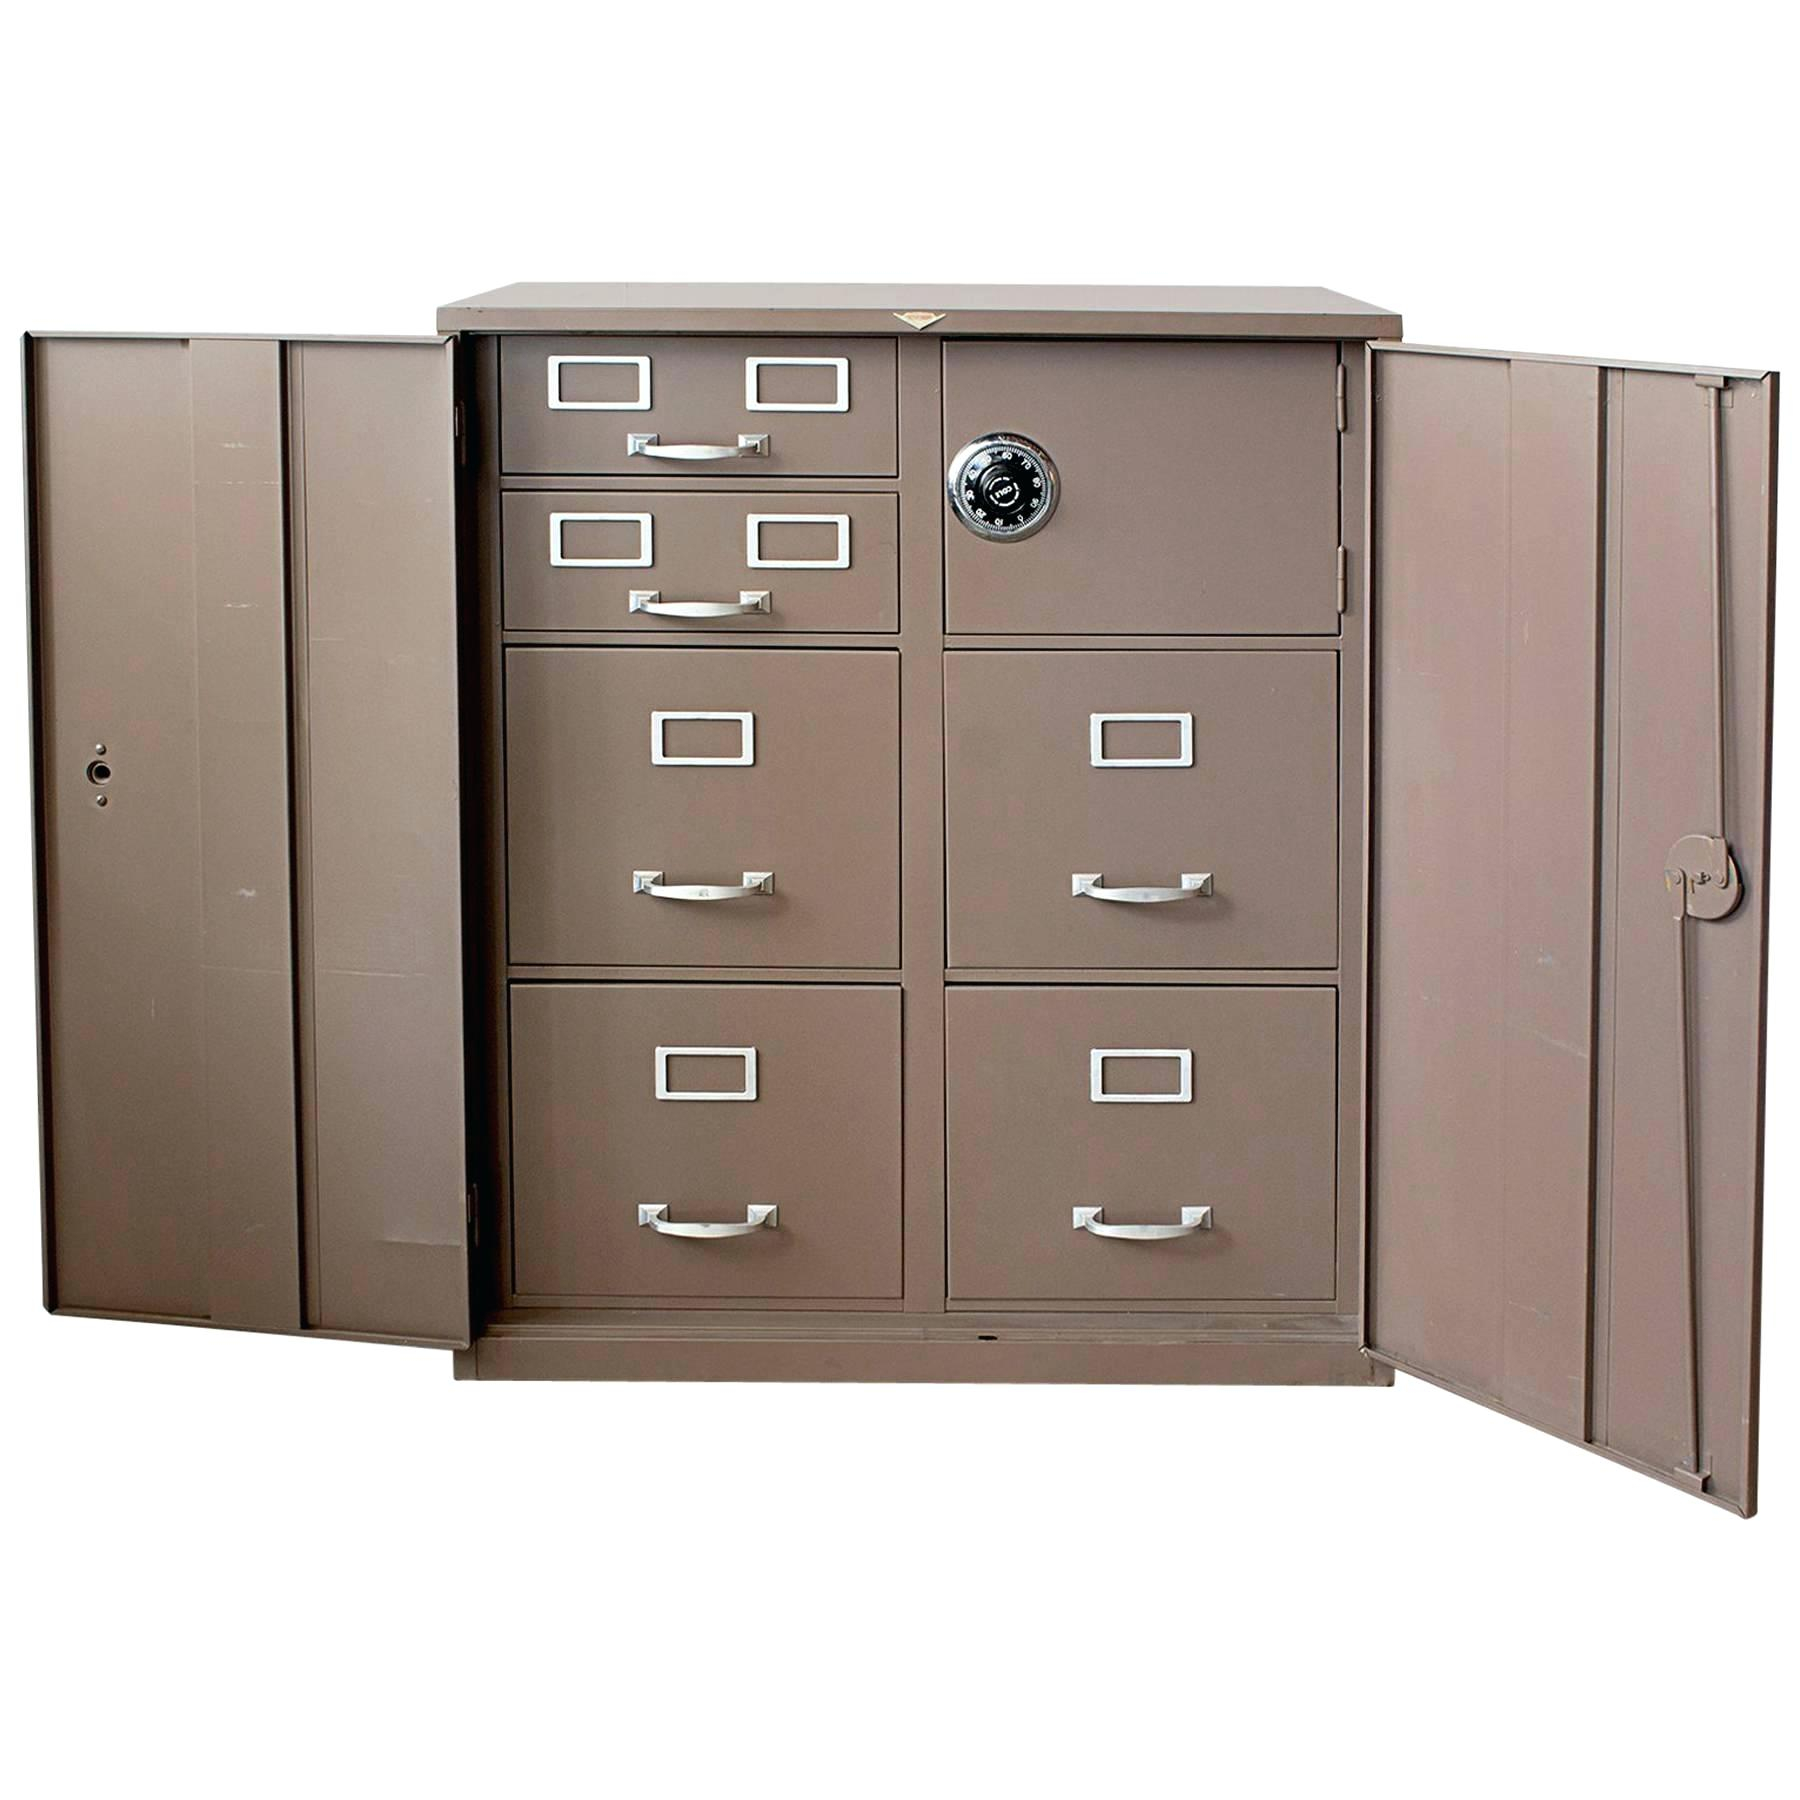 Cole Steel Cabinet Filing Cabinet Keys File Steel Lock Jilco in size 1800 X 1800